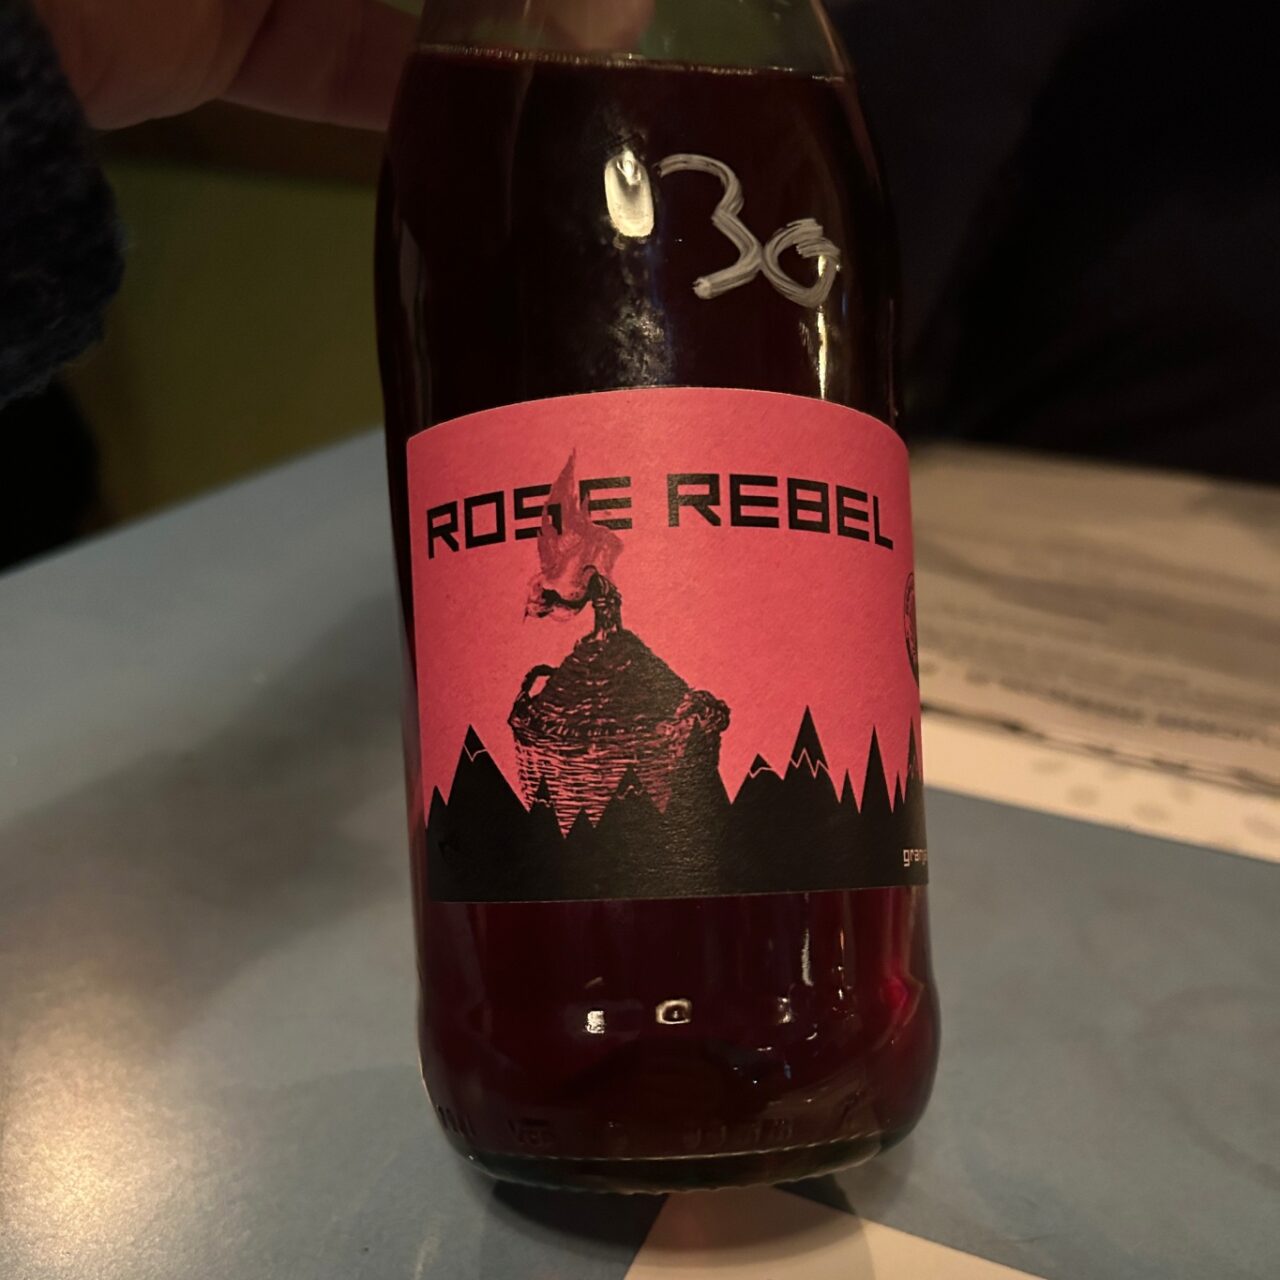 vino rose rebel